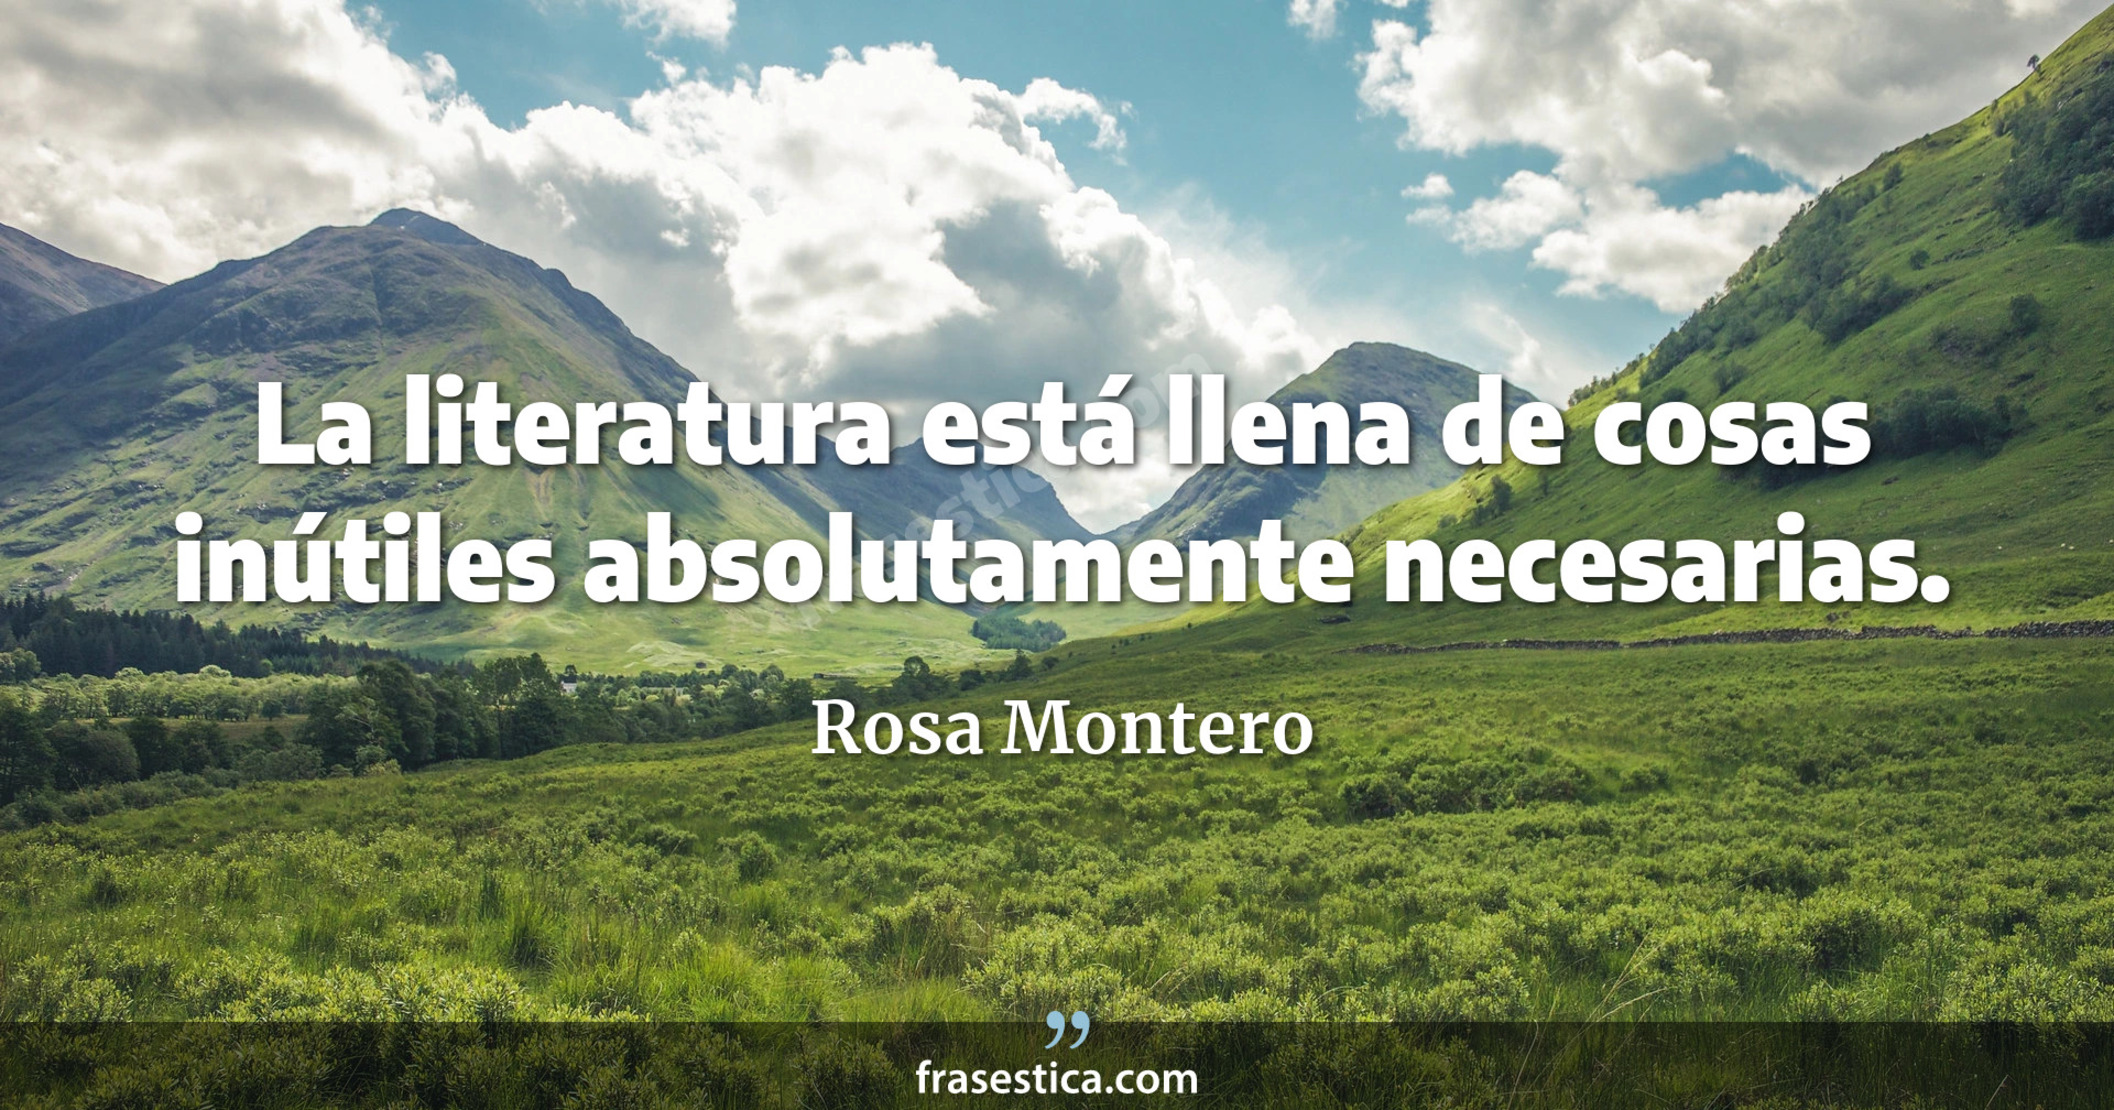 La literatura está llena de cosas inútiles absolutamente necesarias. - Rosa Montero